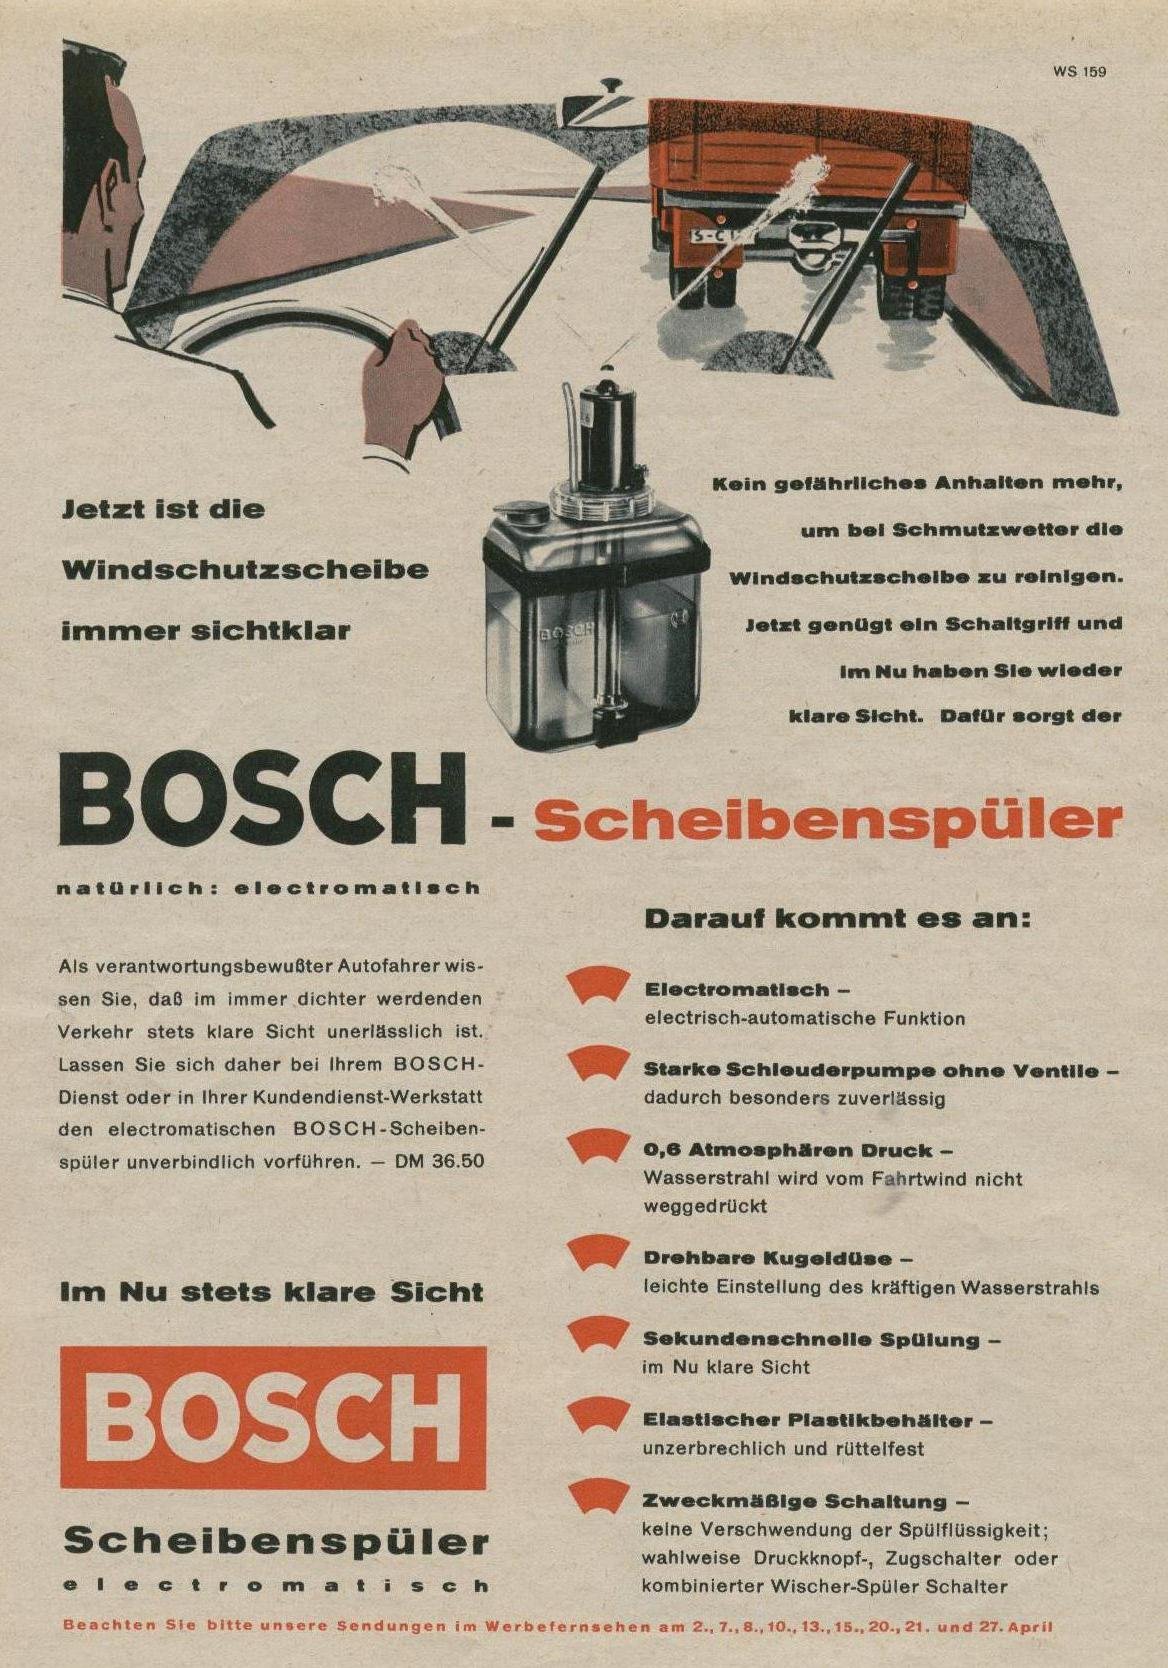 Archives Literature Misc Added 1959 Bosch Scheibenspuler Ad